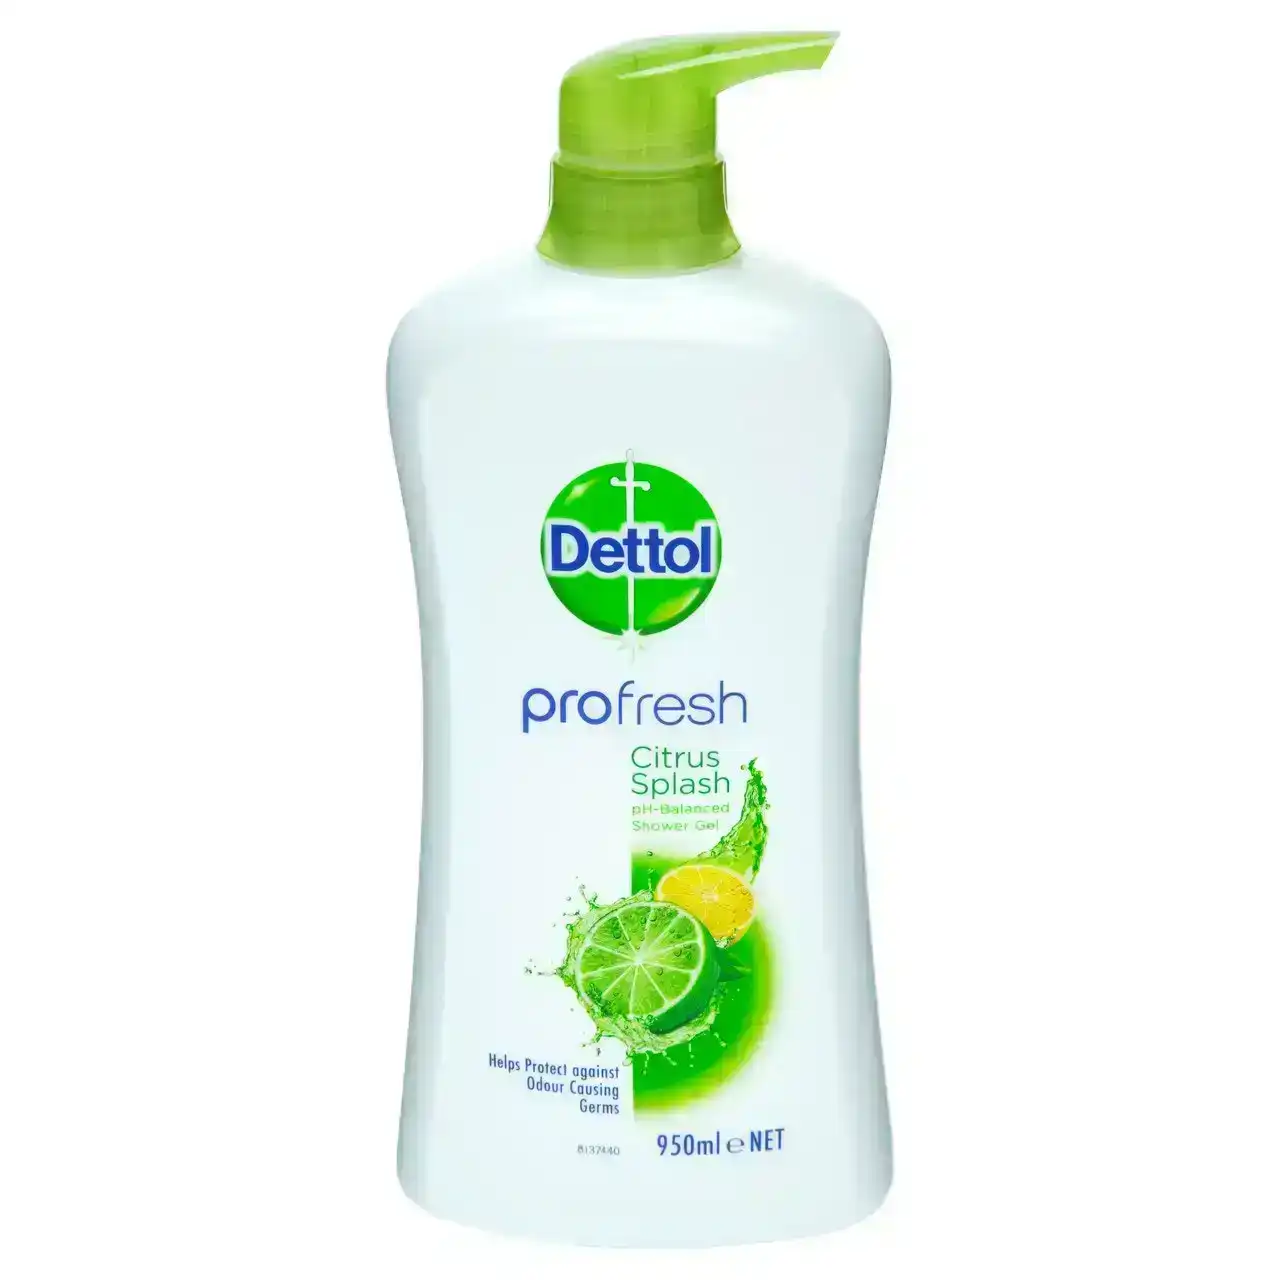 Dettol Profresh Shower Gel Body Wash Lemon and Lime 950mL